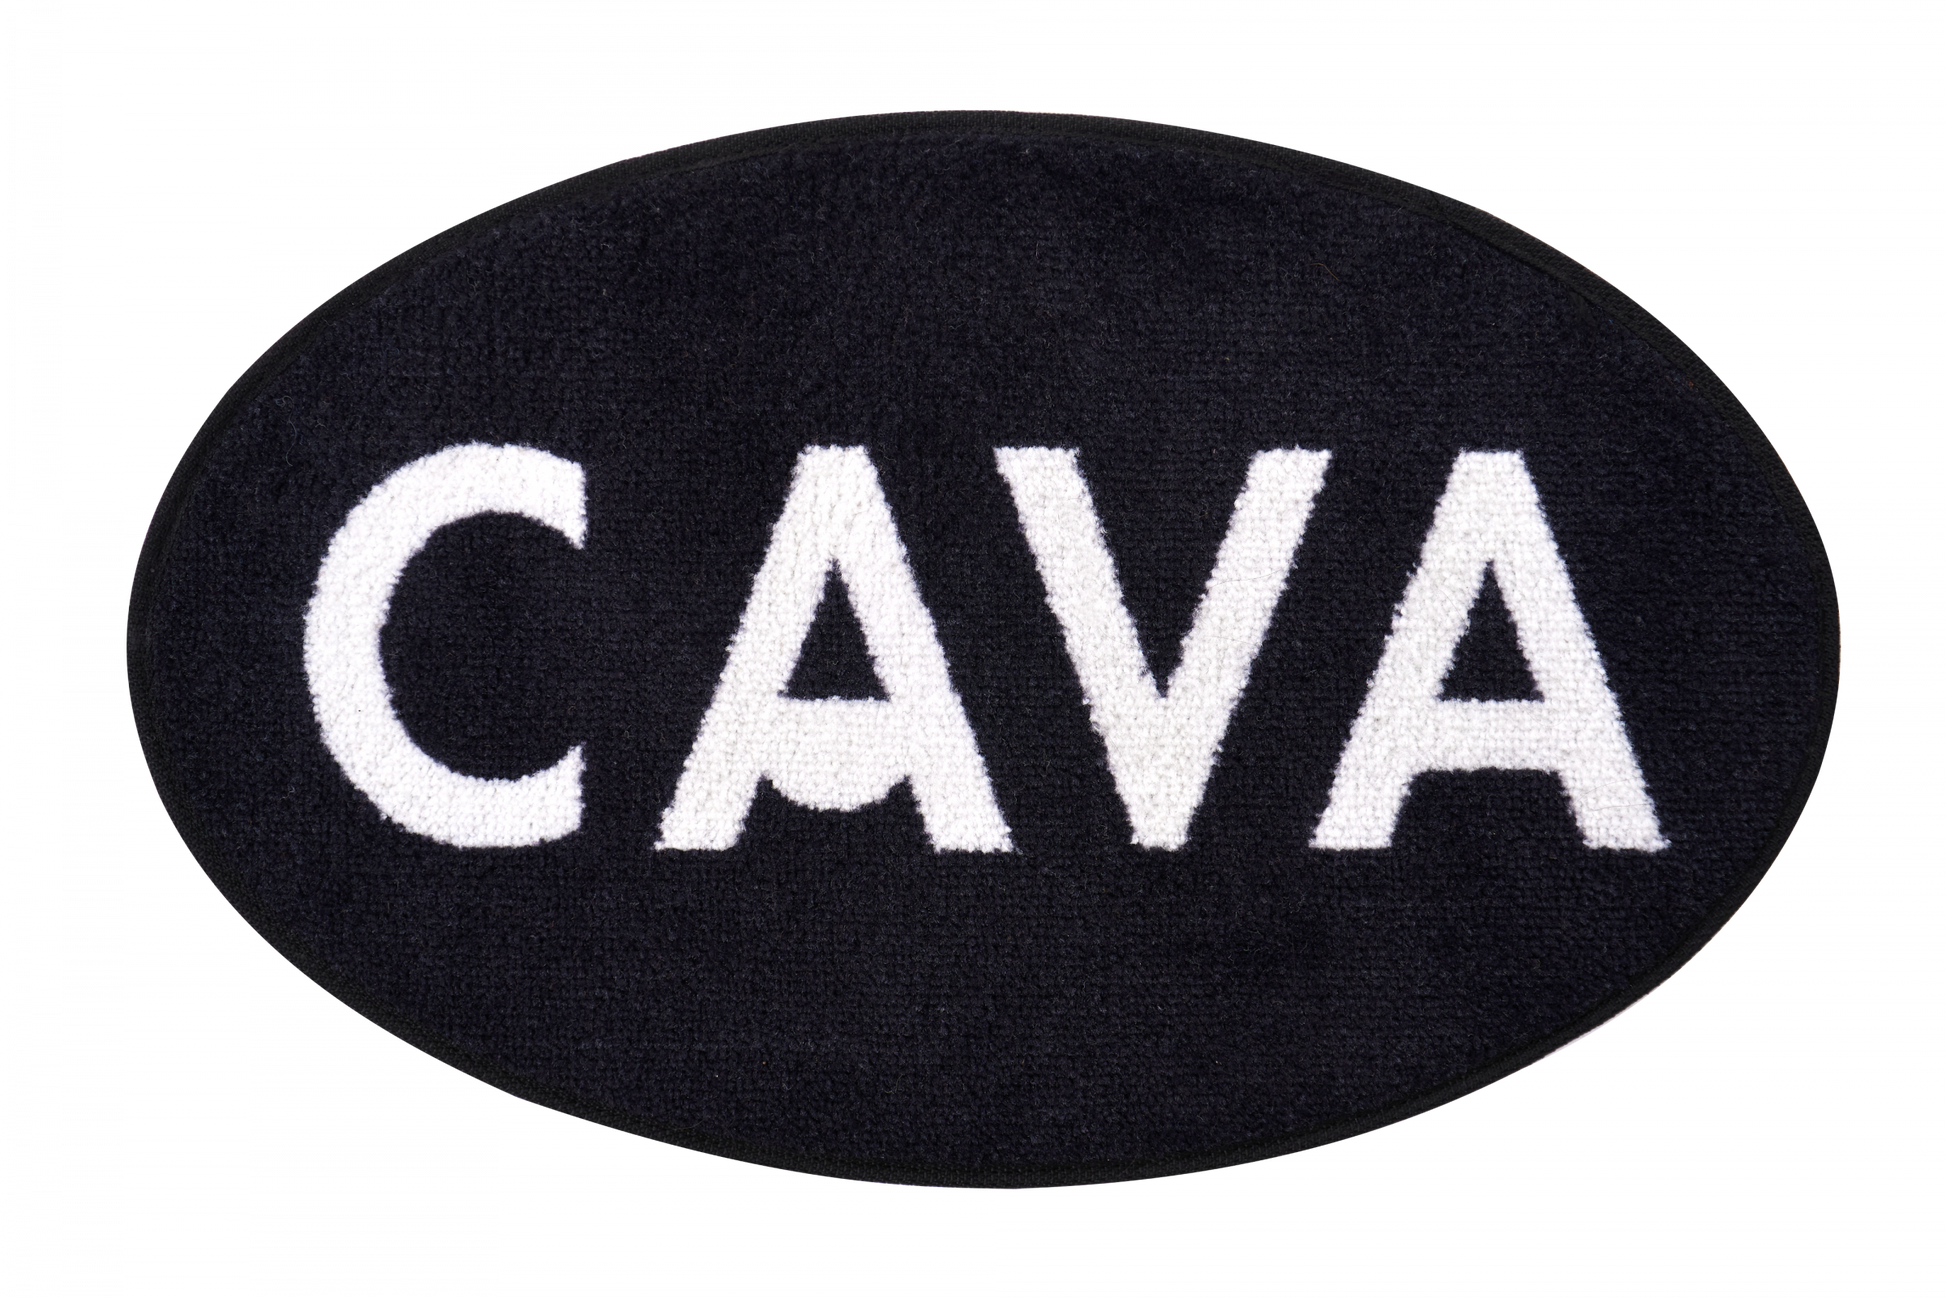 카바 라이프에서 판매 중인 하얀색 카바 로고가 새겨진 검정색 타원형 도어매트의 앞면을 촬영한 사진입니다. 